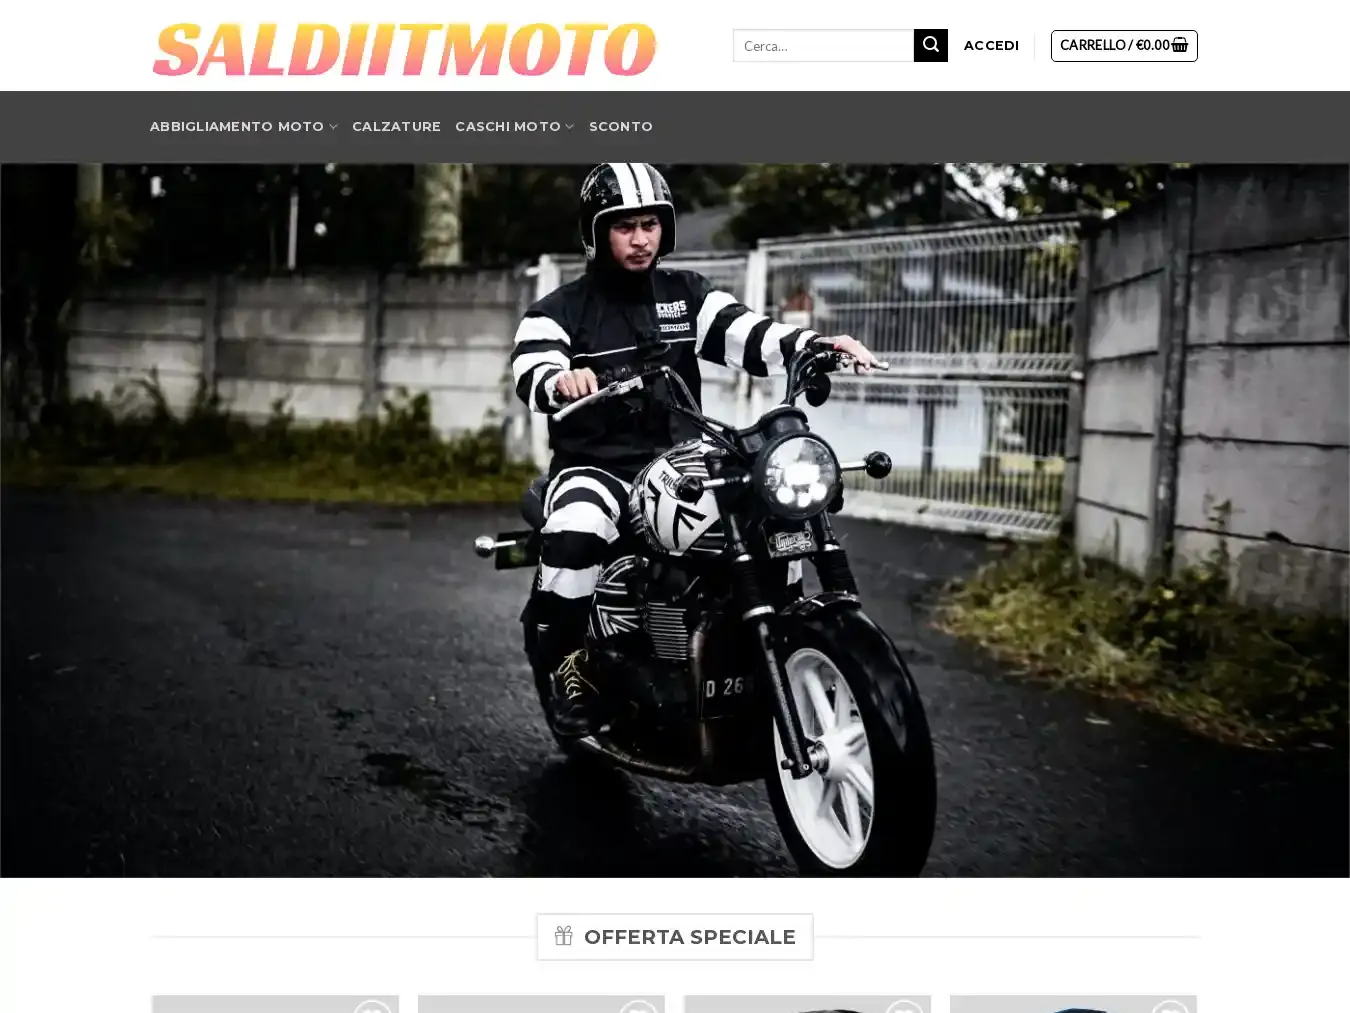 Saldiitmoto.com Fraudulent Non-Delivery website.